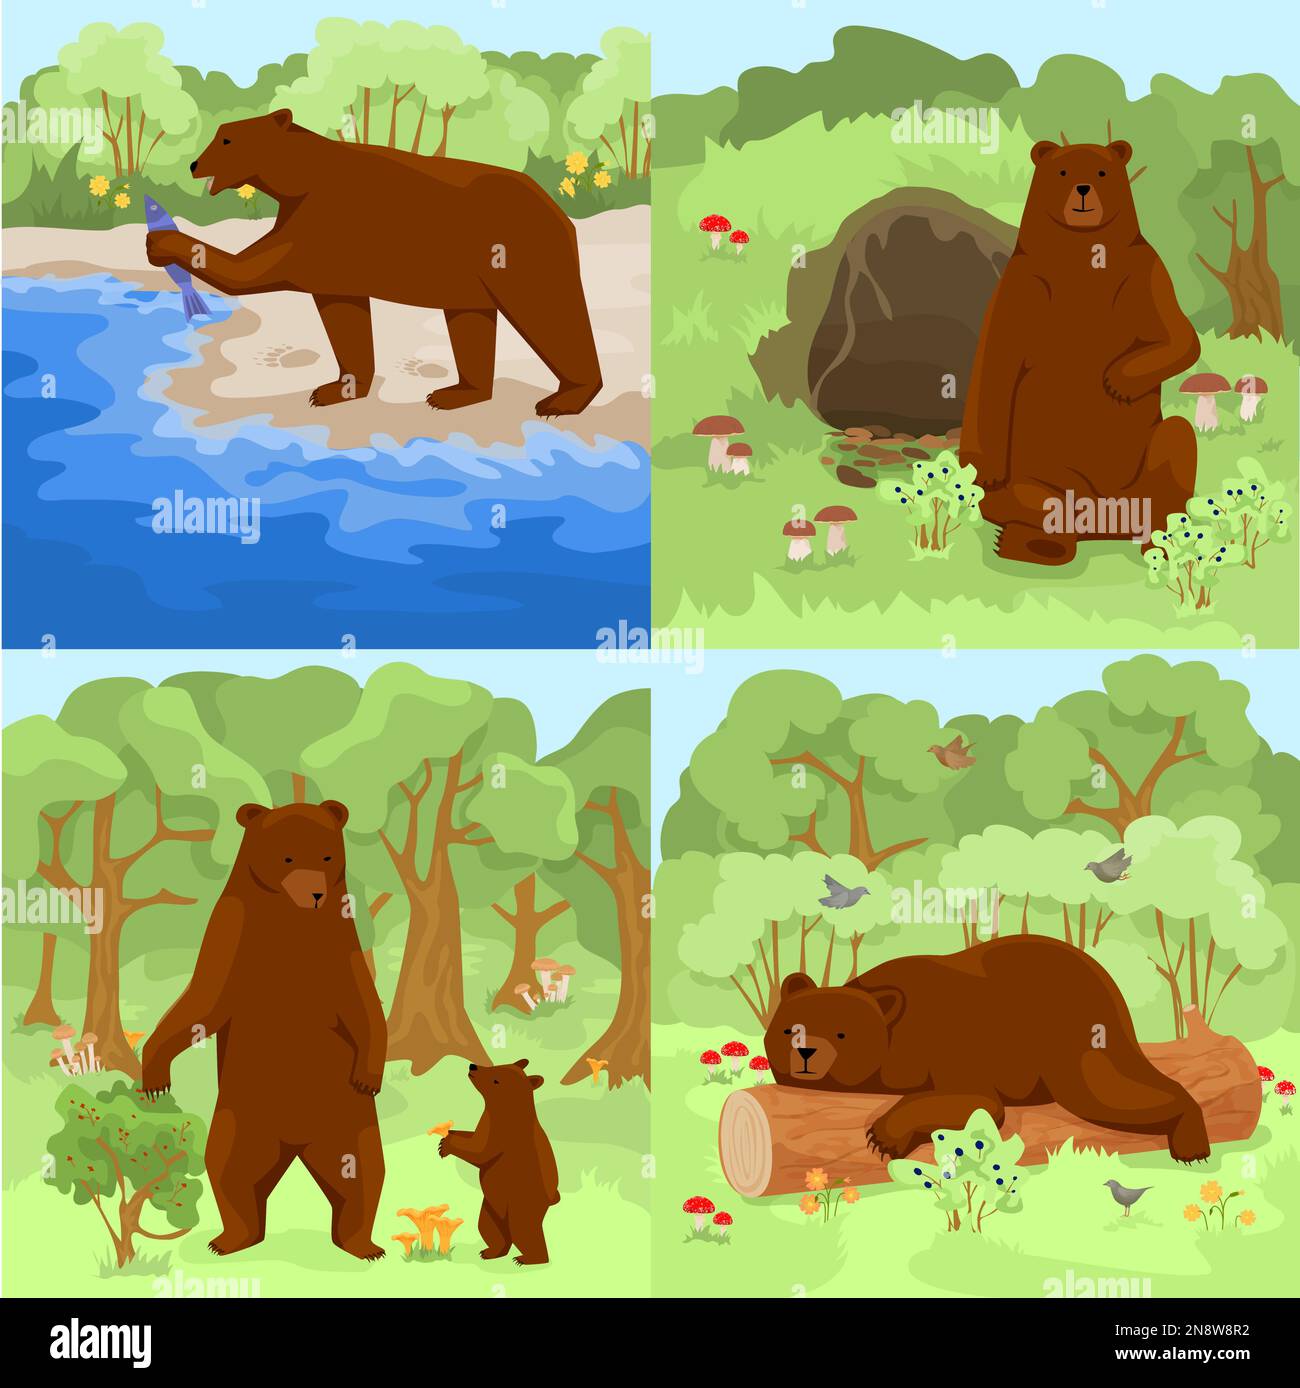 Set mit vier quadratischen Kompositionen mit Waldlandschaften im Freien und braunen Grizzlybären in ihrem Lebensraum, Vektordarstellung Stock Vektor